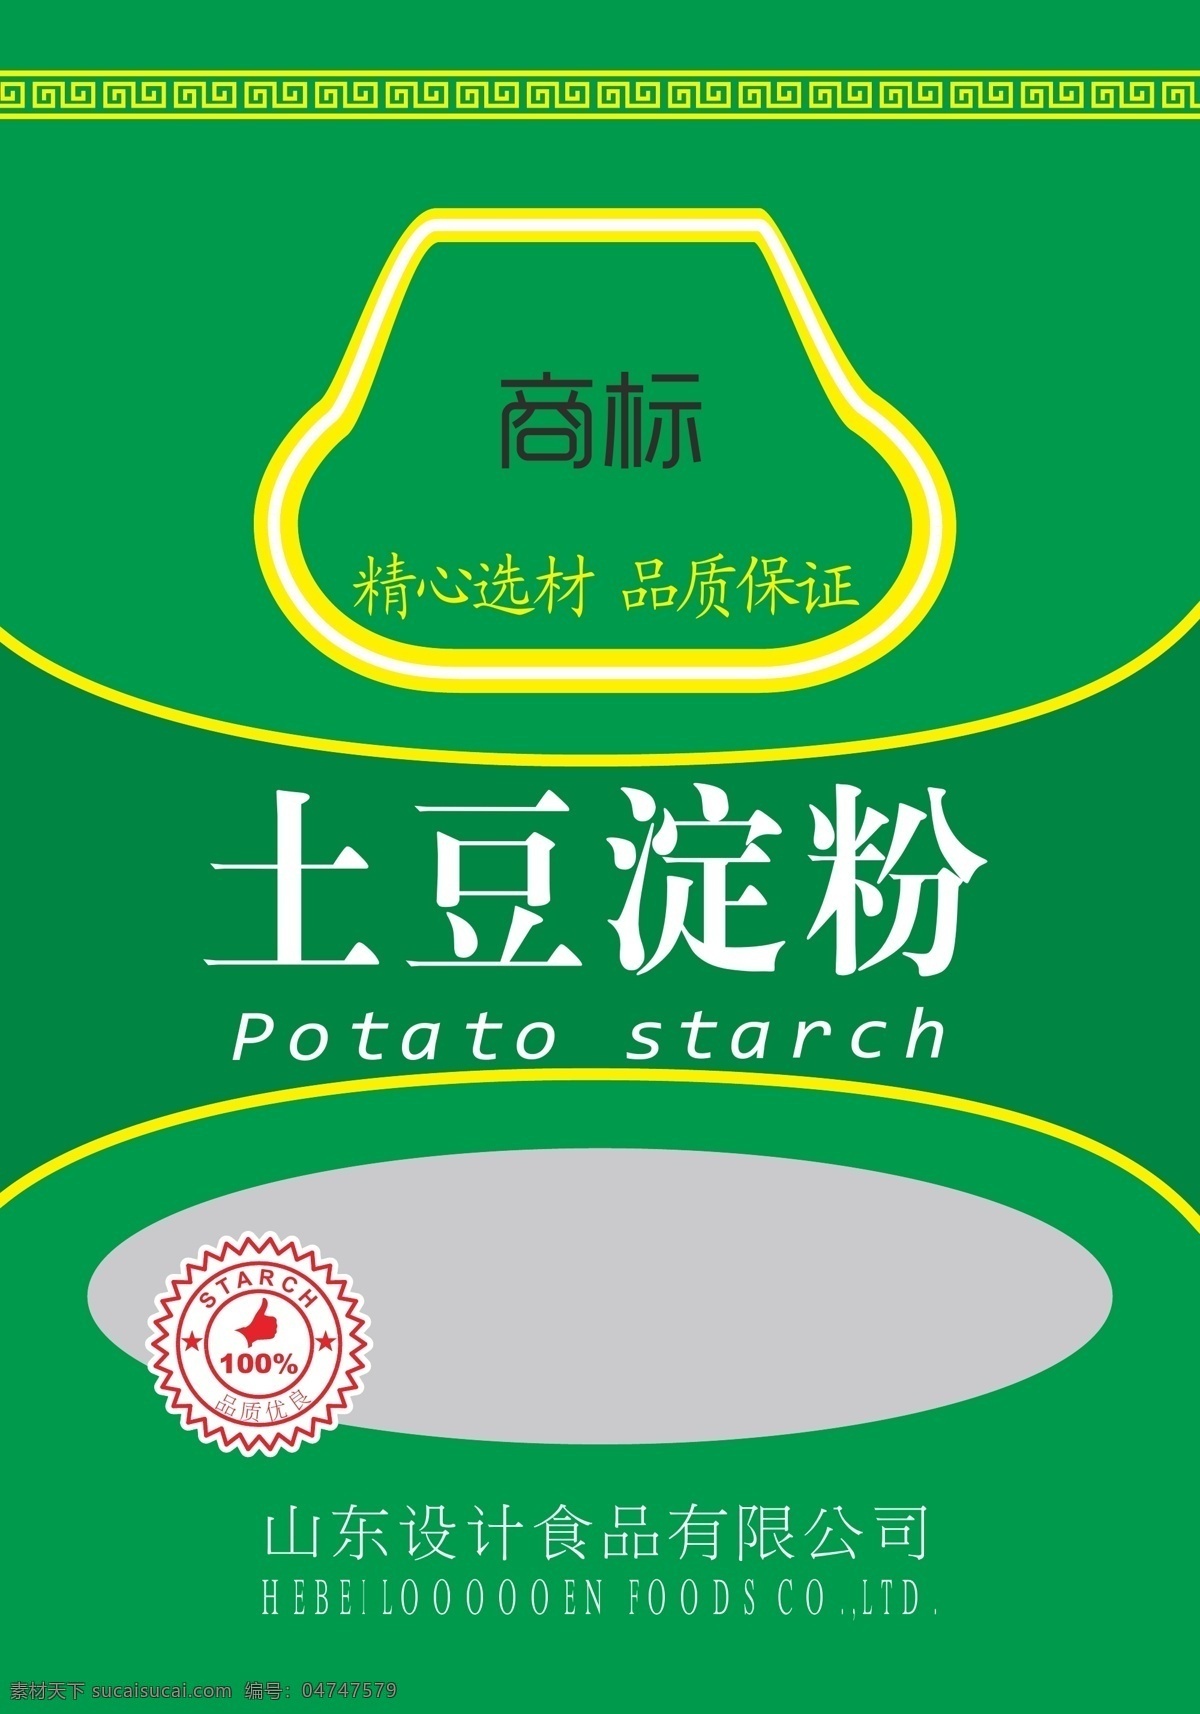 土豆 淀粉 包装设计 食品袋 圆标 土豆包装 矢量 cs6 psd源文件